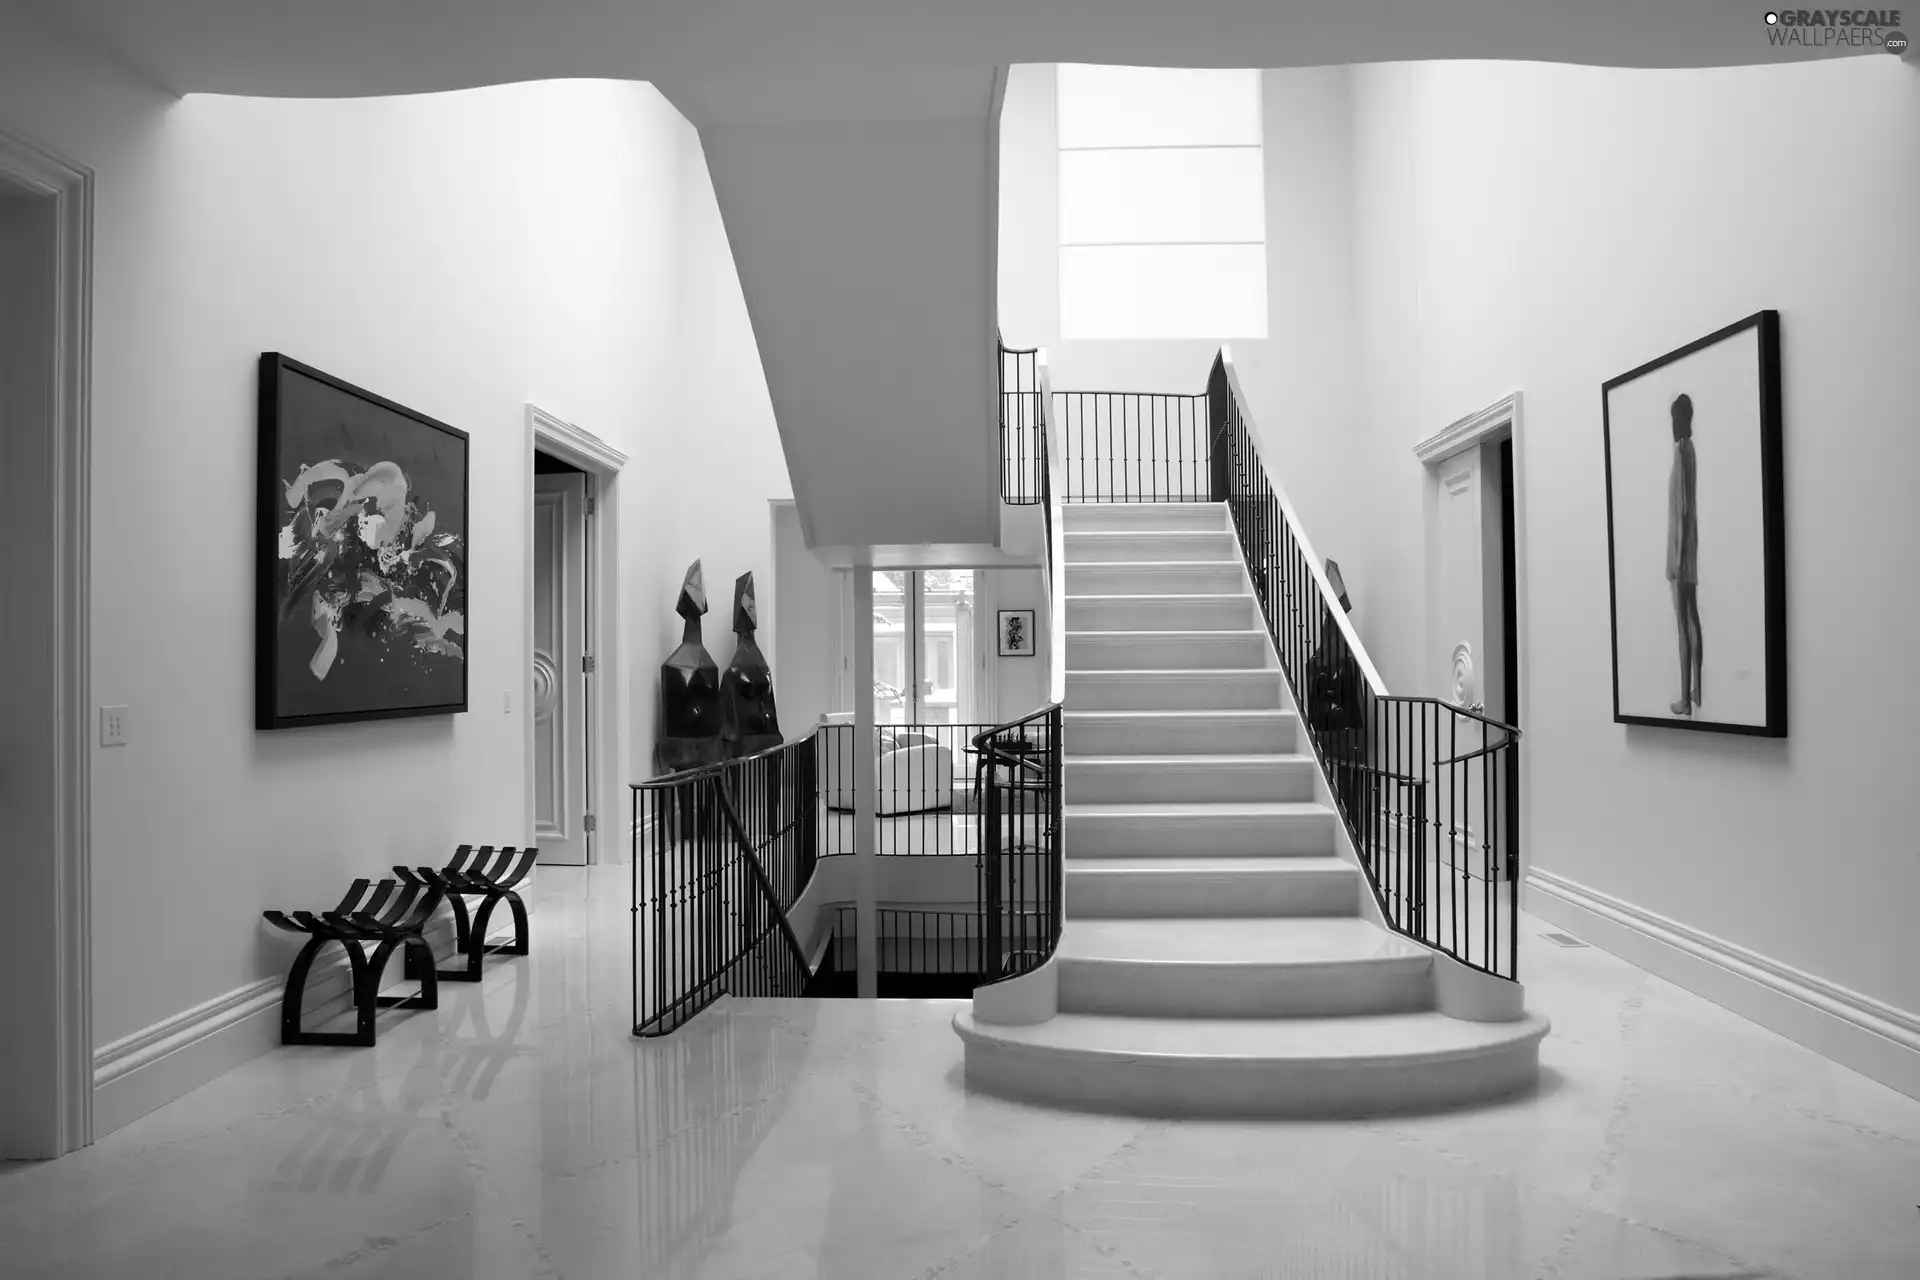 interior, Stairs